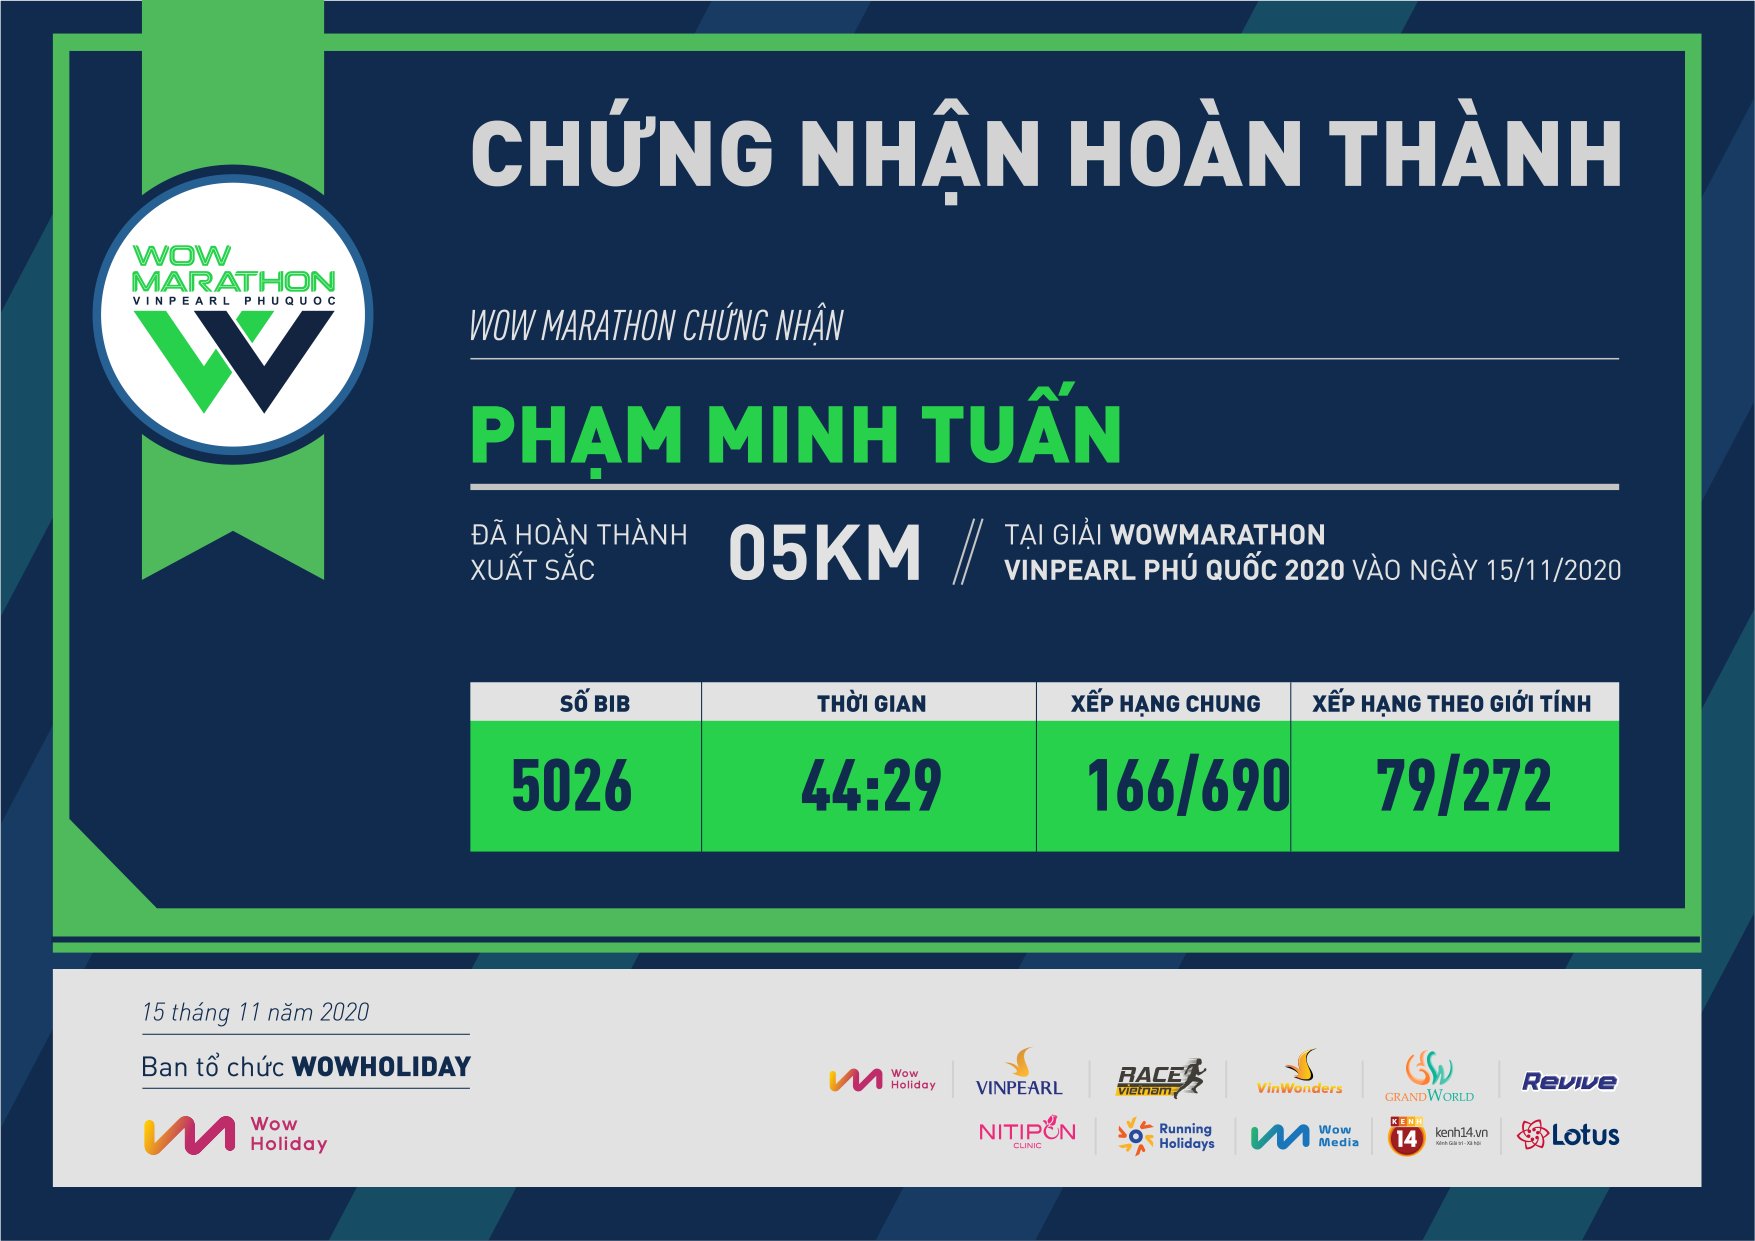 5026 - Phạm Minh Tuấn